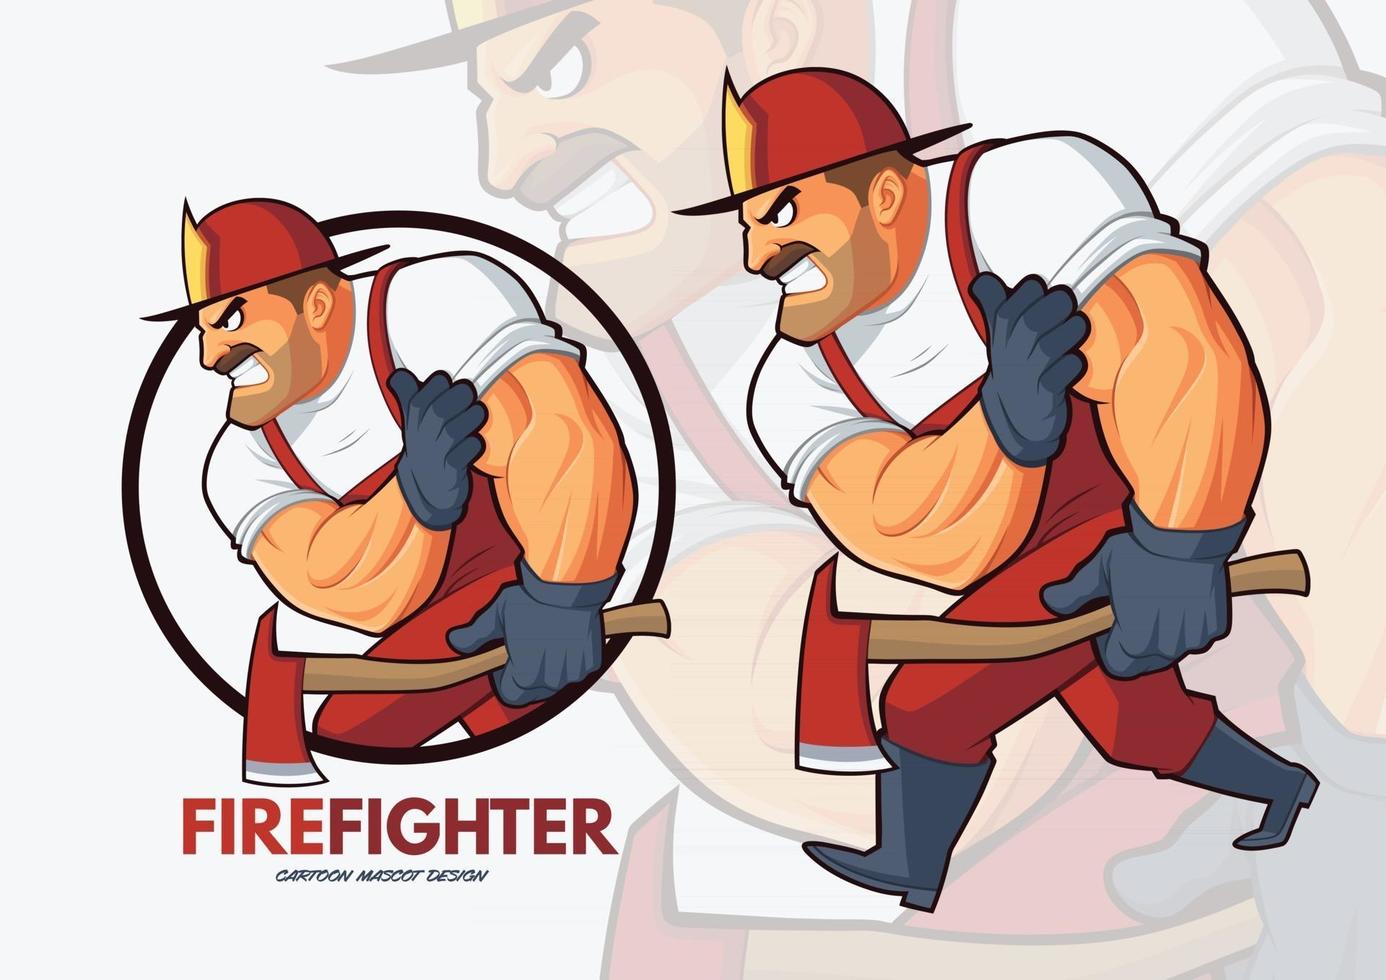 Fearless Fire Fighter Cartoon Mascot Design vector